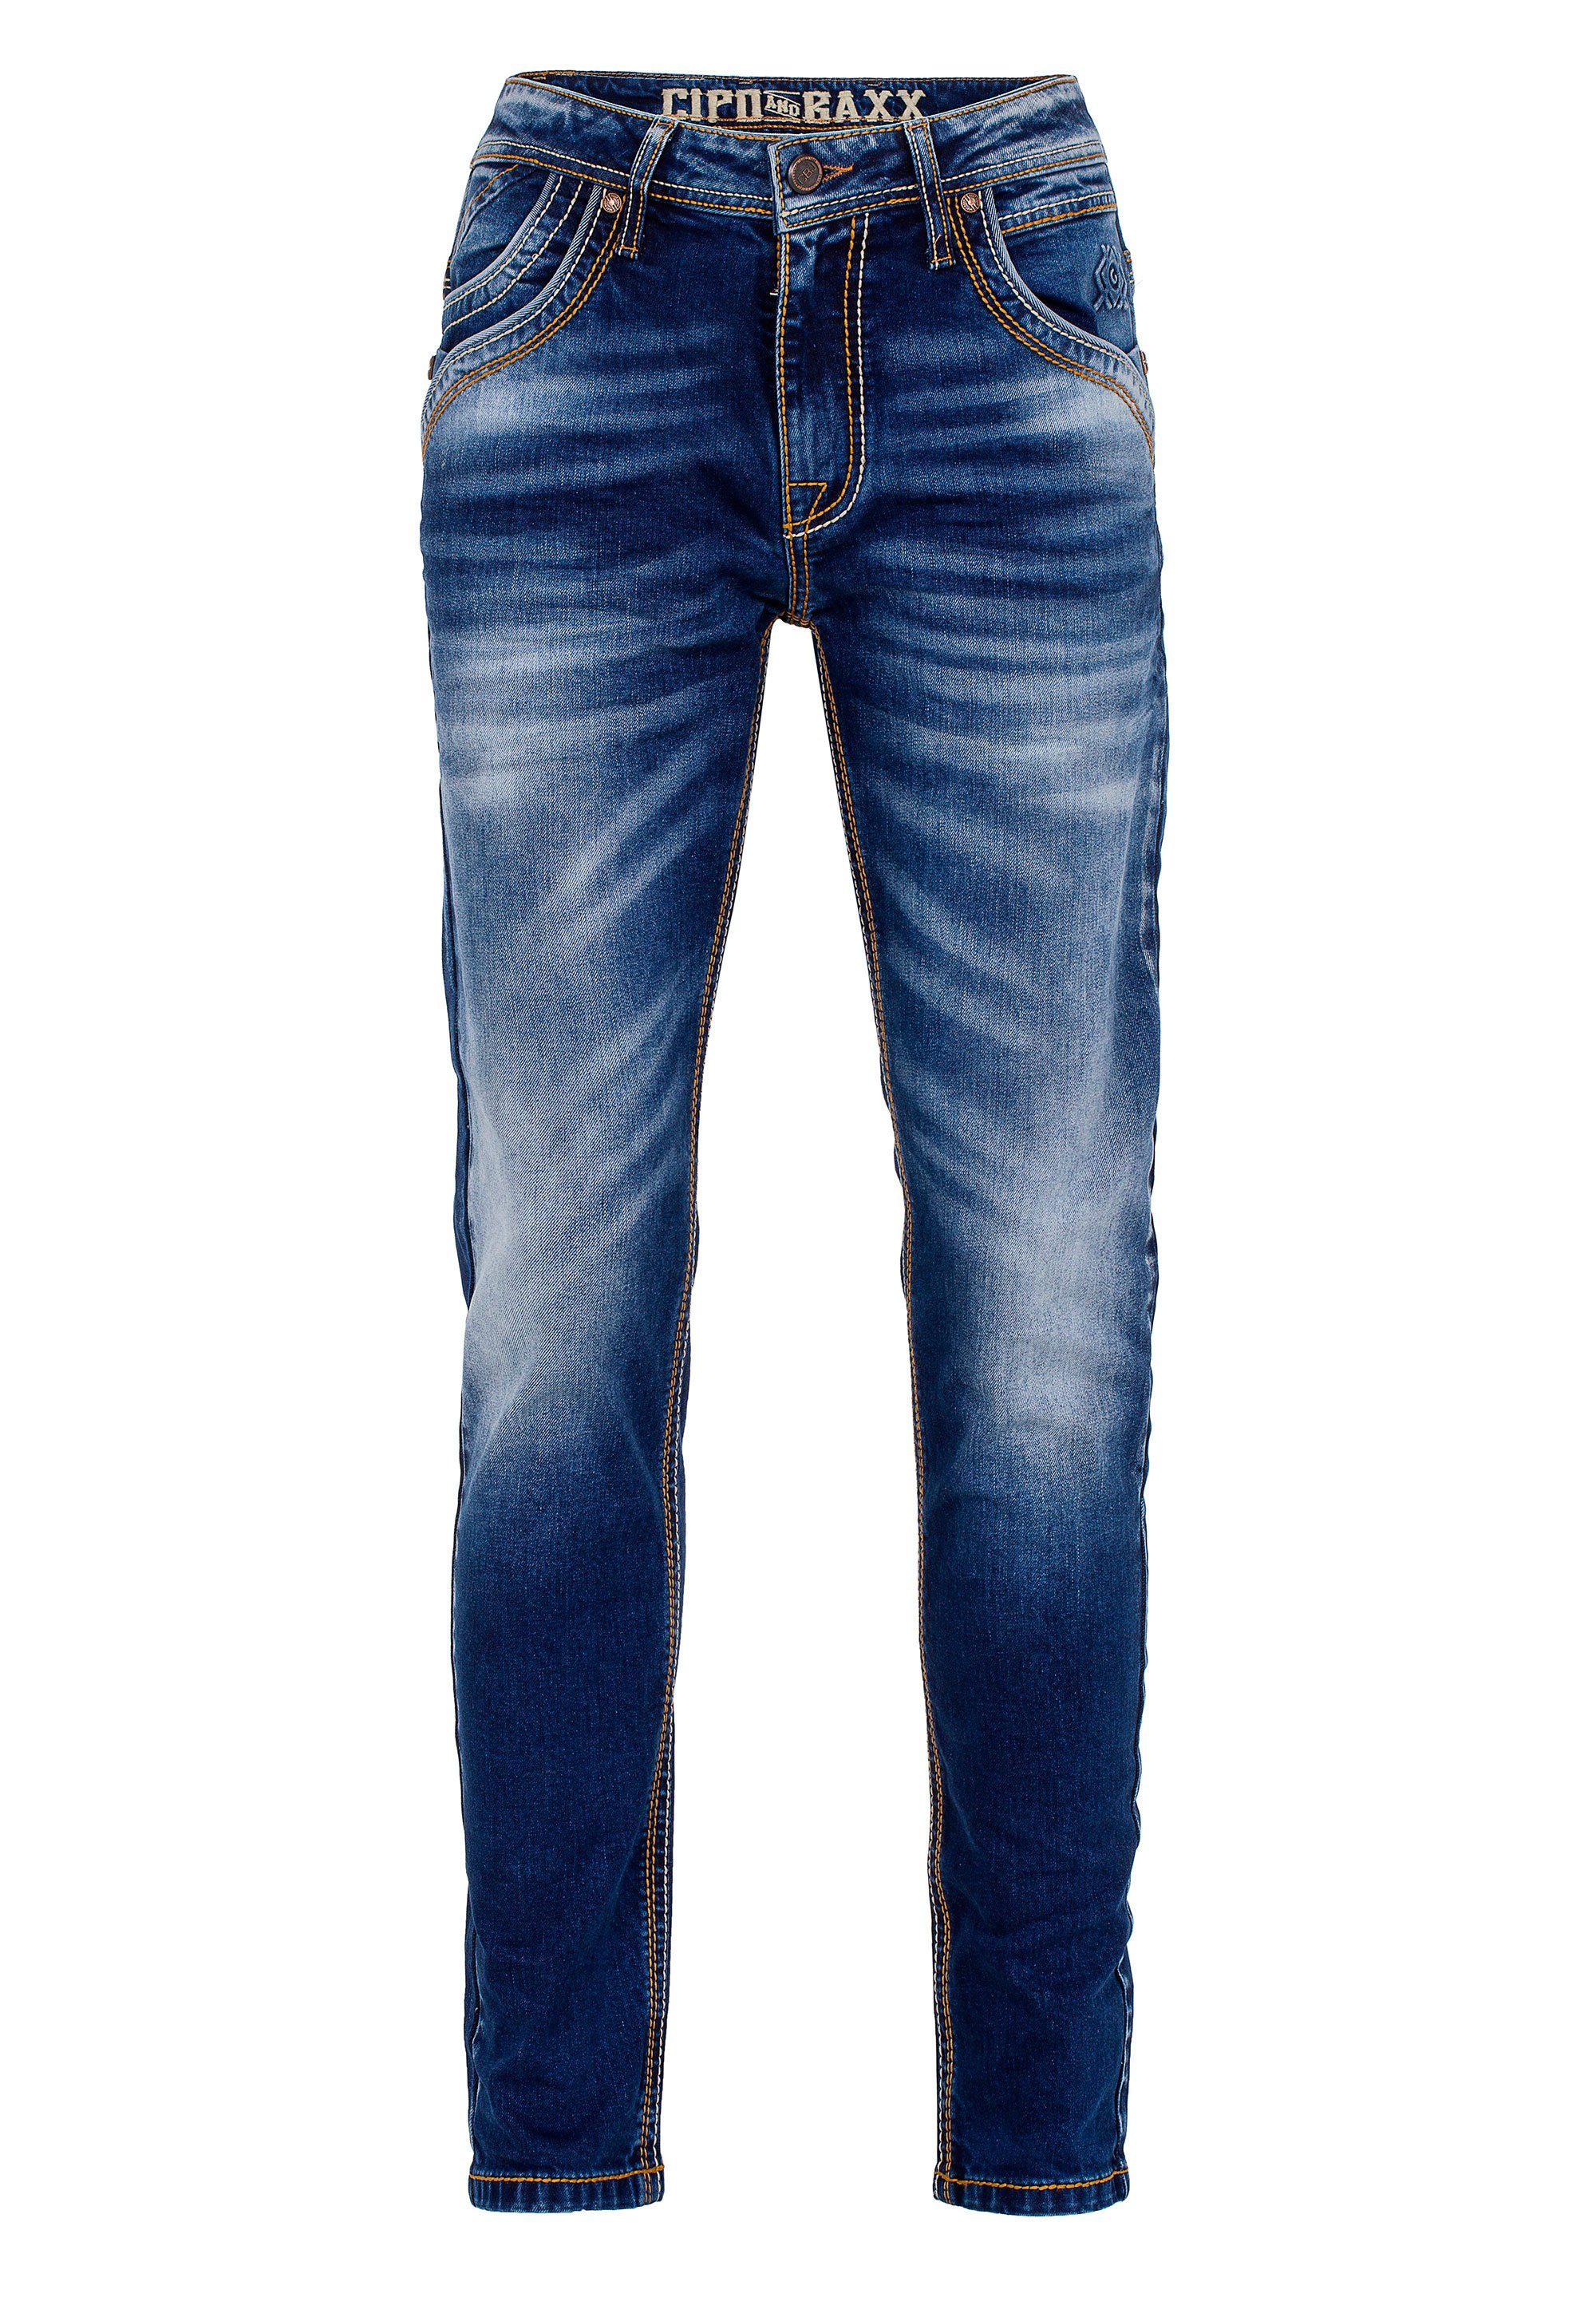 Baxx Ziernähten Bequeme Cipo Jeans & mit dezenten